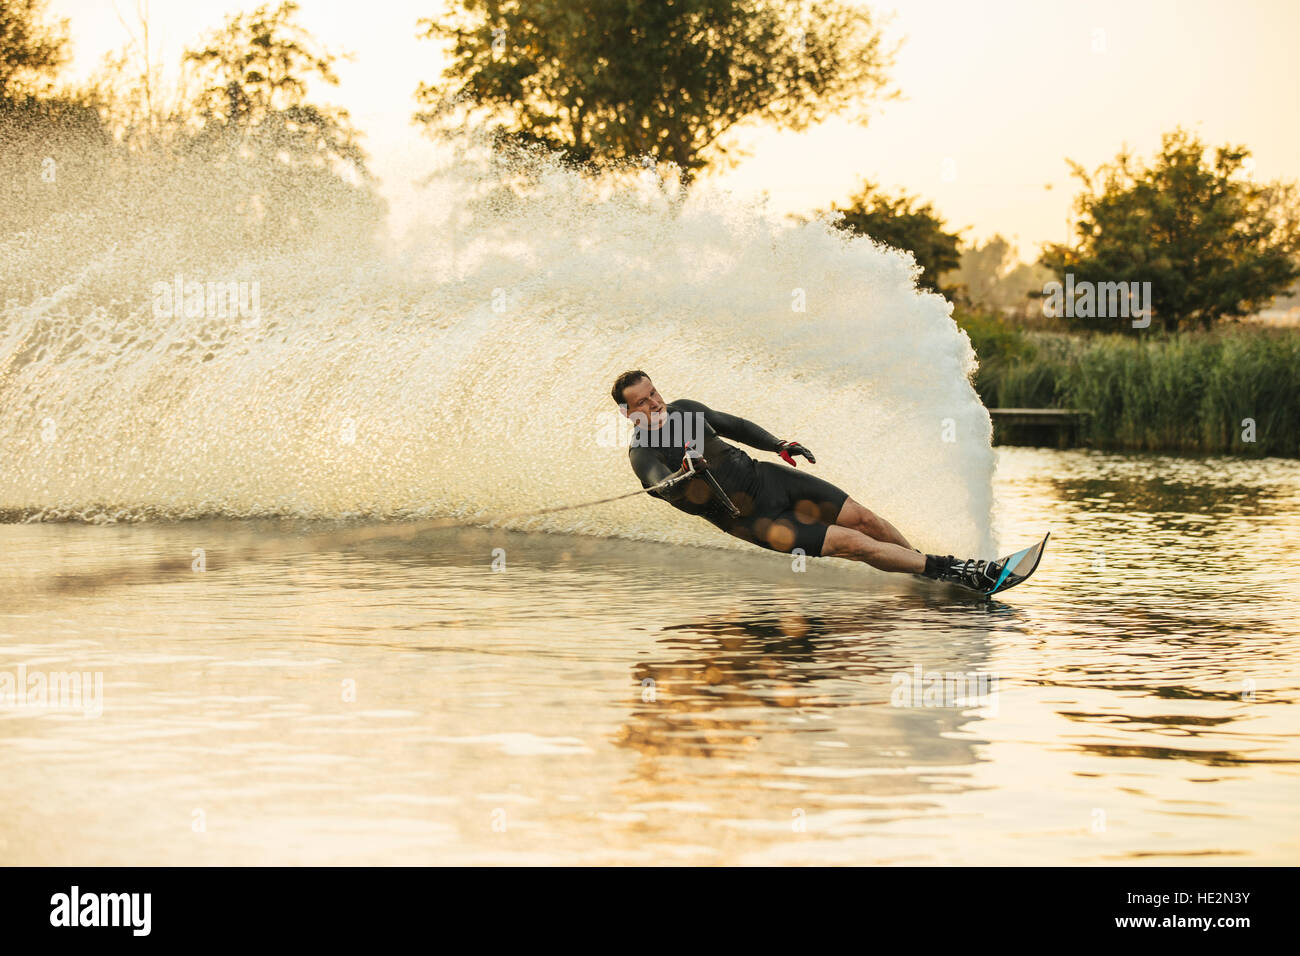 Show de hombre de su habilidad para esquiar de agua sobre un lago. Atleta haciendo acrobacias en wakeboard. Foto de stock